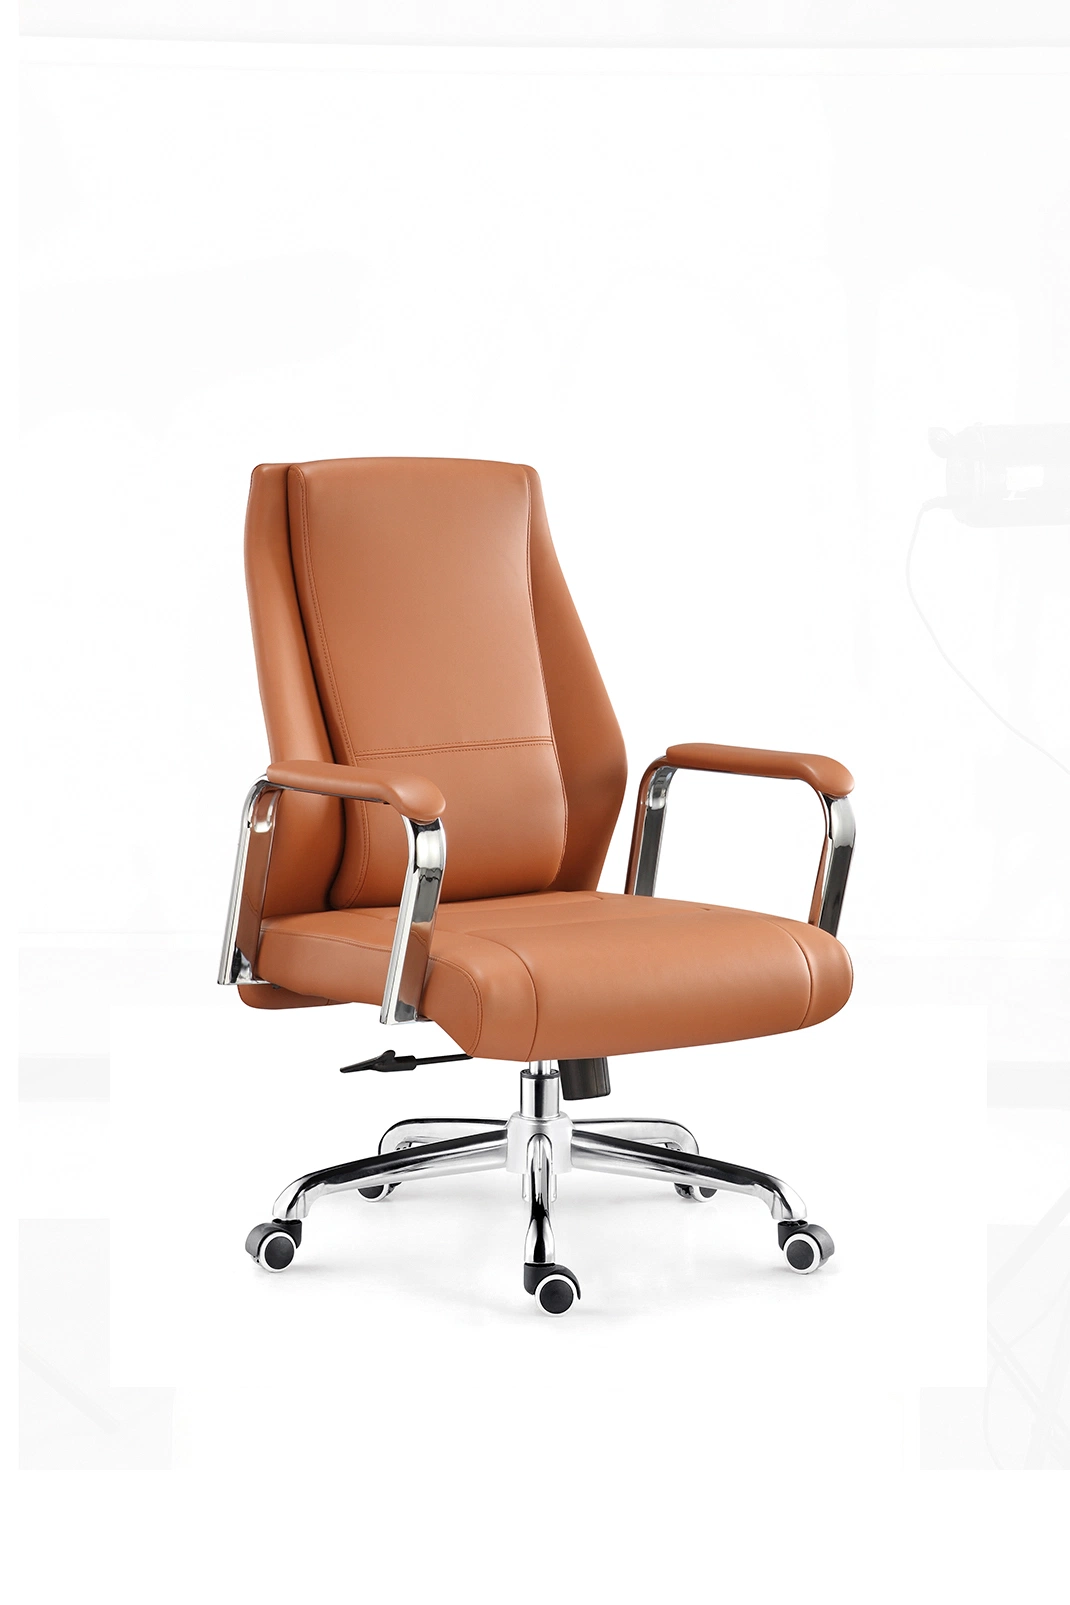 Heißes Produkt Leder Büro Besucher Stuhl mit niedrigem Preis Großhandel